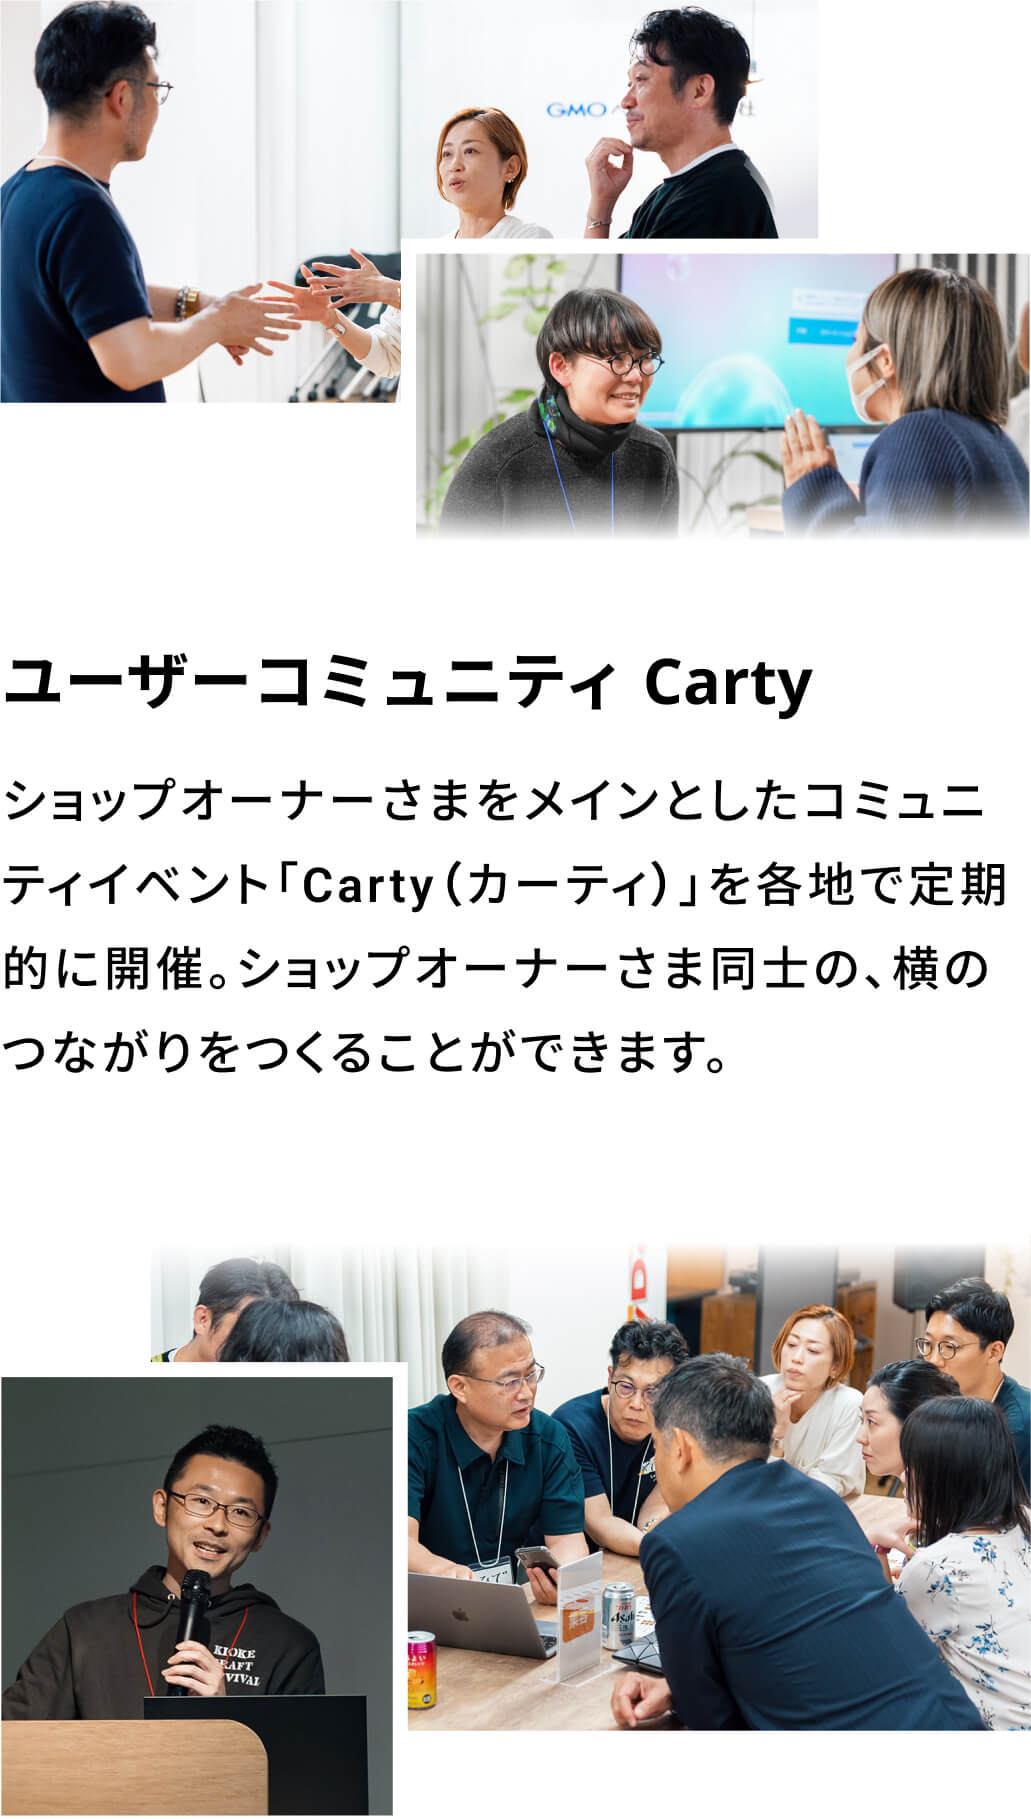 ユーザーコミュニティ Carty:ショップオーナーさまをメインとしたコミュニティイベント「Carty（カーティ）」を各地で定期的に開催。ショップオーナーさま同士の、横のつながりをつくることができます。